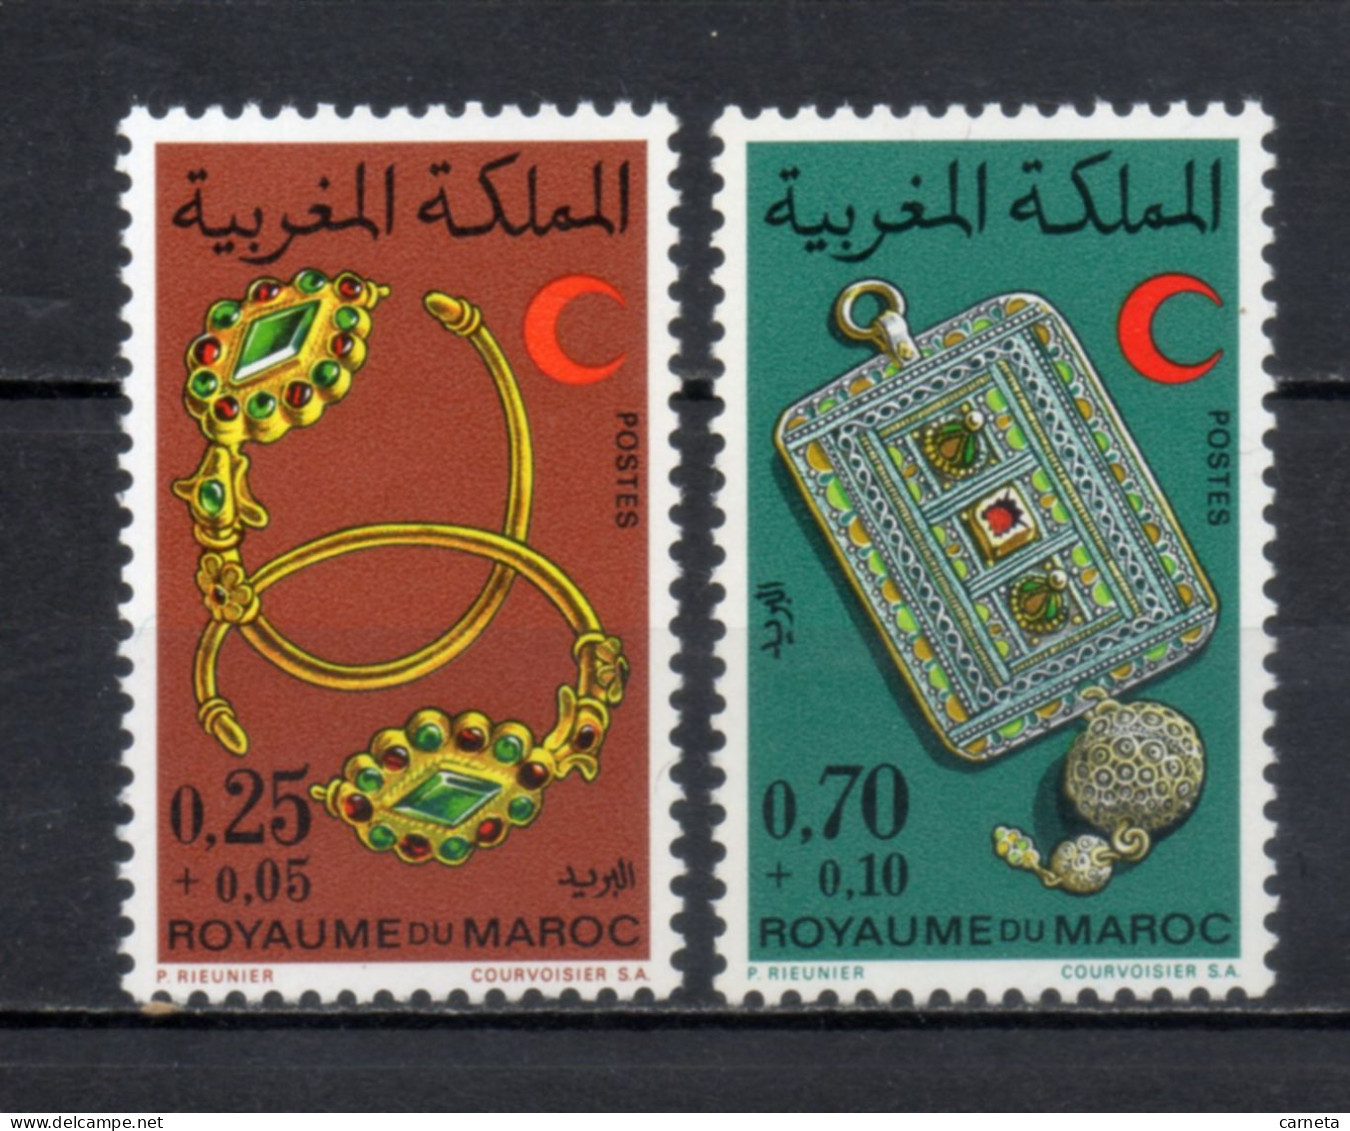 MAROC N°  637 + 638    NEUFS SANS CHARNIERE  COTE 3.50€     CROISSANT ROUGE - Marruecos (1956-...)